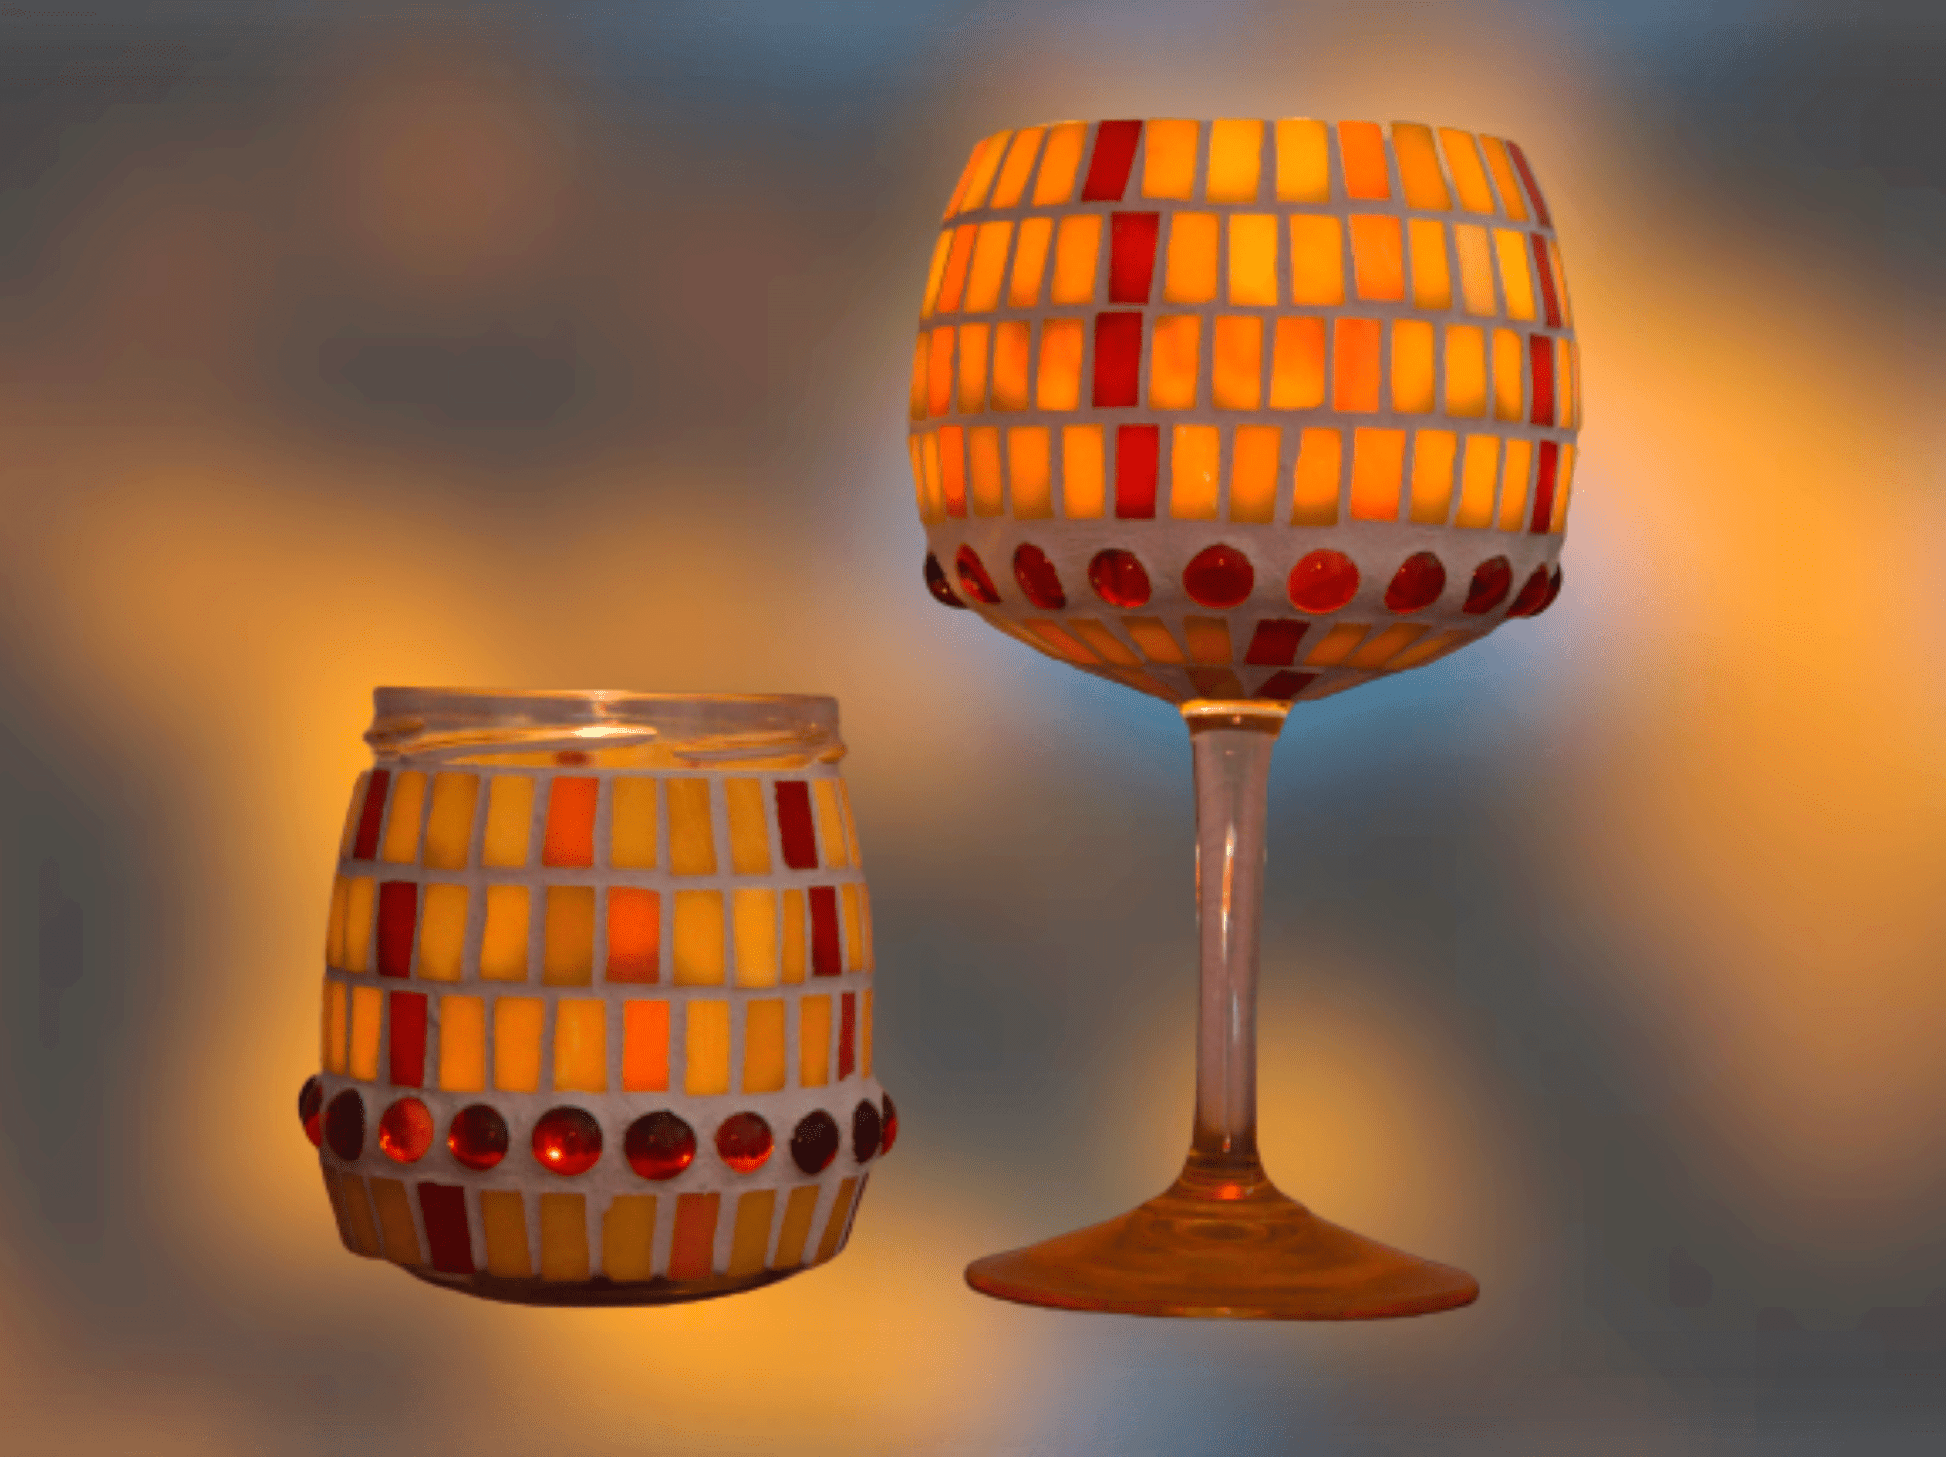 Mosaik Windlicht gelb rot orange 20 cm hoch - Kerzenhalter - Mosaikkasten aus alt mach neu dekoidee